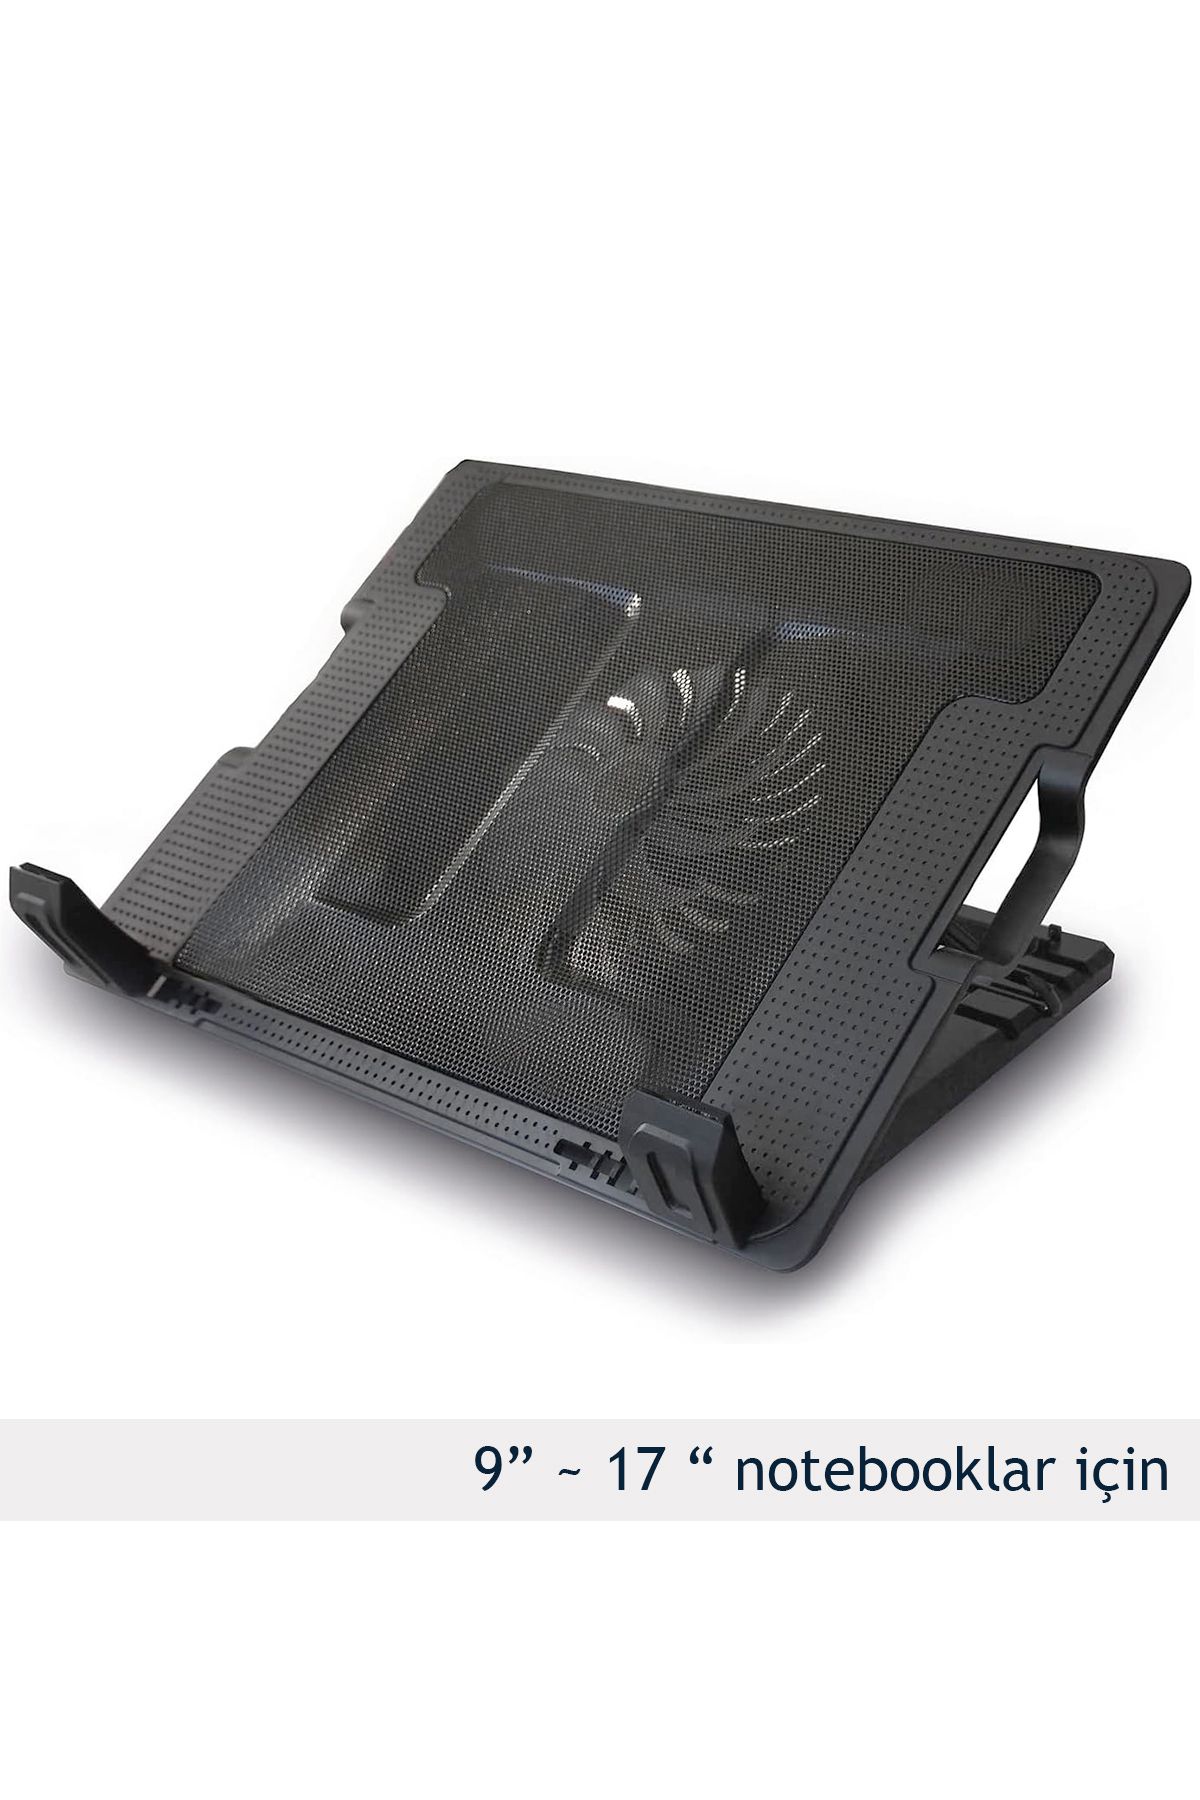 CARNIVAL LAND Ayarlı Tablet Laptop Notebook Soğutucu Stand Sessiz 5 Kademeli Mavi Ledli Mega Fanlı